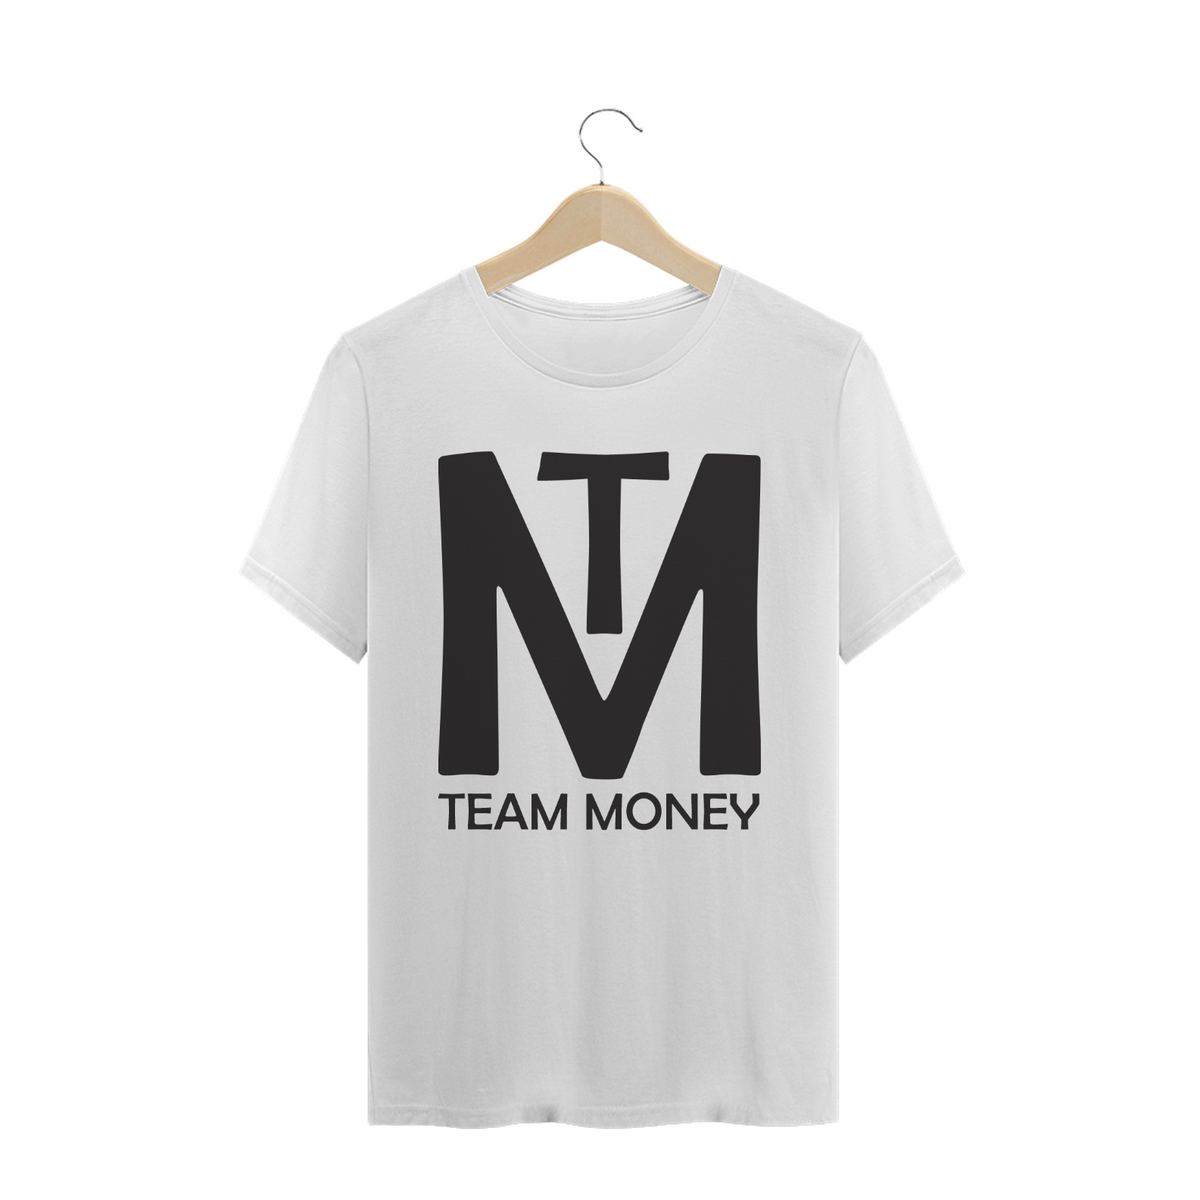 Nome do produto: Promo Team Money